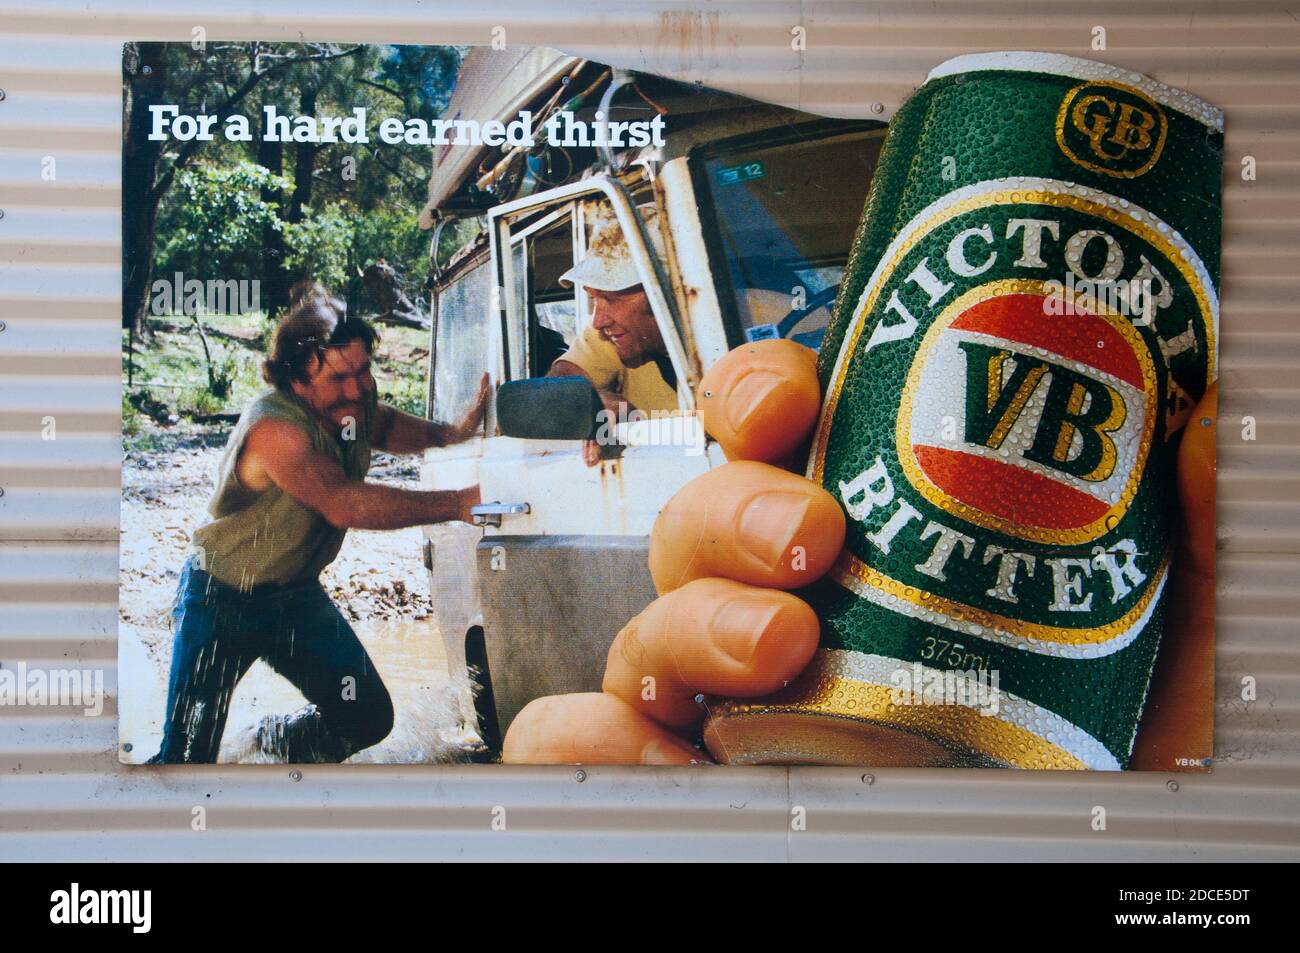 Bierwerbung im ländlichen Victoria, Australien, stachelt unverschämt altmodische männliche Tugenden harter Arbeit und Mattigkeit. Stockfoto